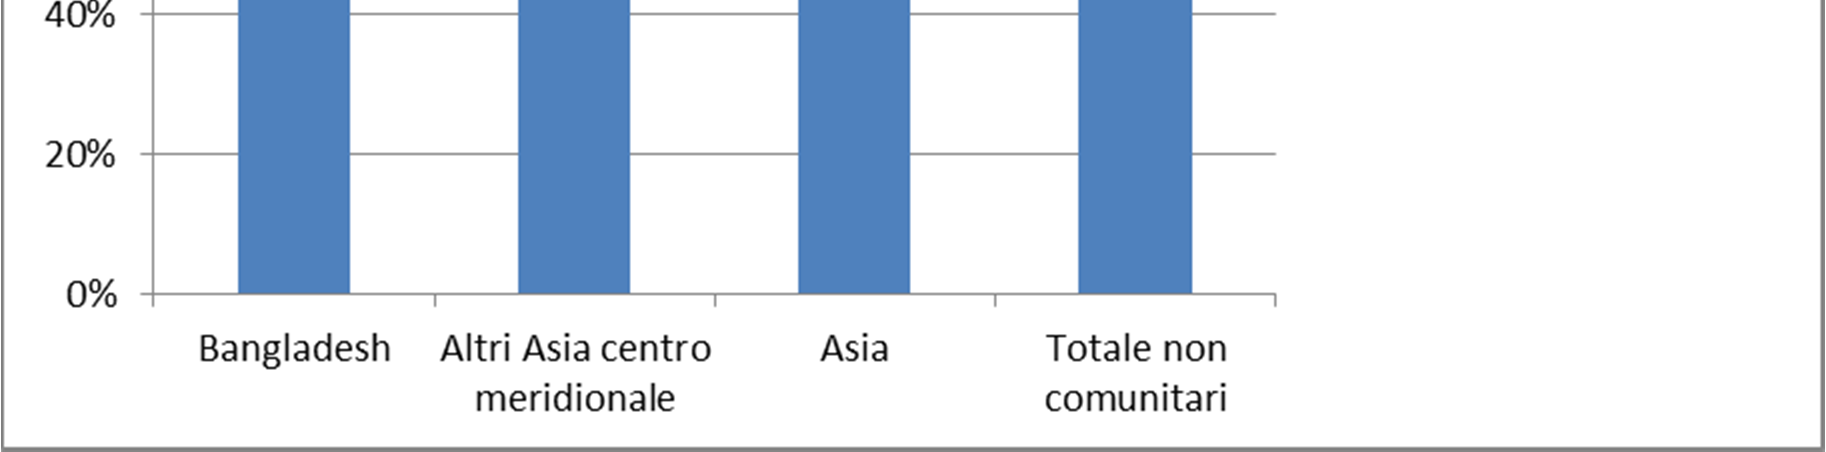 42 2015 - Rapporto Comunità Bangladese in Italia Il matrimonio rappresenta un indice di stabilizzazione delle presenze: il 57% dei cittadini bangladesi coniugati sono titolari di un permesso per